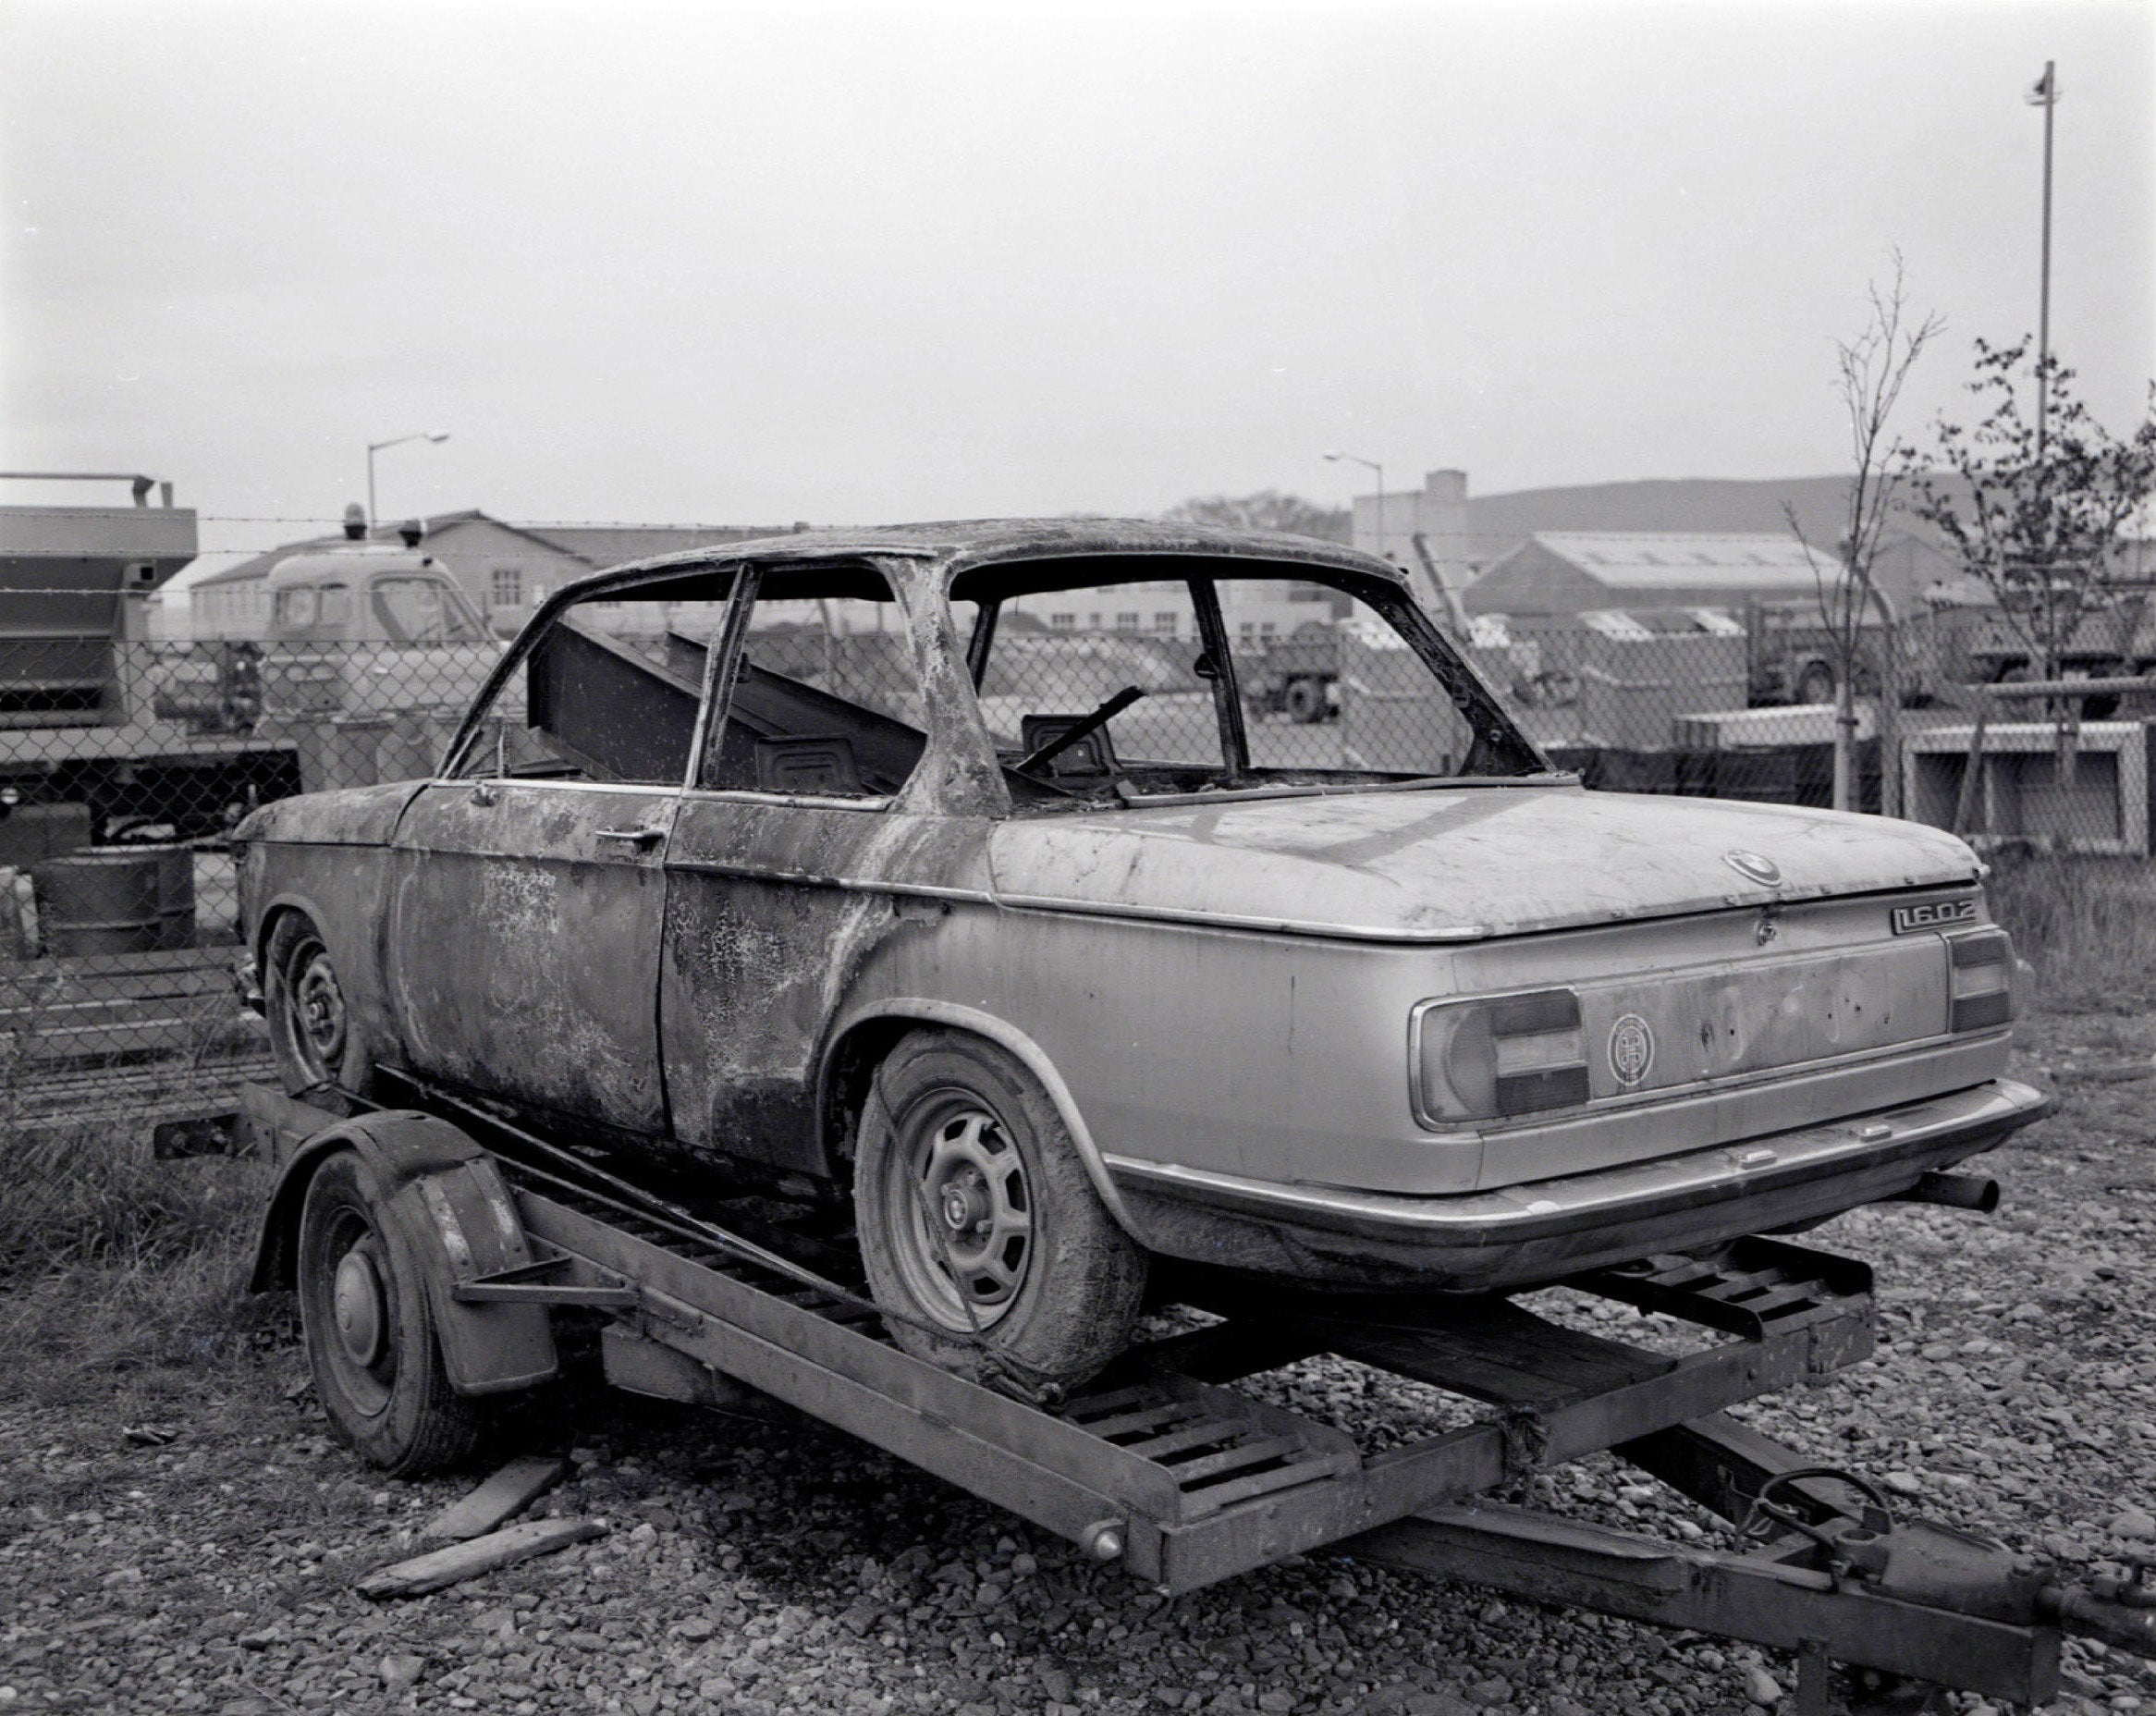 El BMW de Renee MacRae, que desapareció junto con su hijo Andrew en noviembre de 1976, se halló calcinado en un área de descanso de la autopista A9, pero sus cuerpos nunca se encontraron